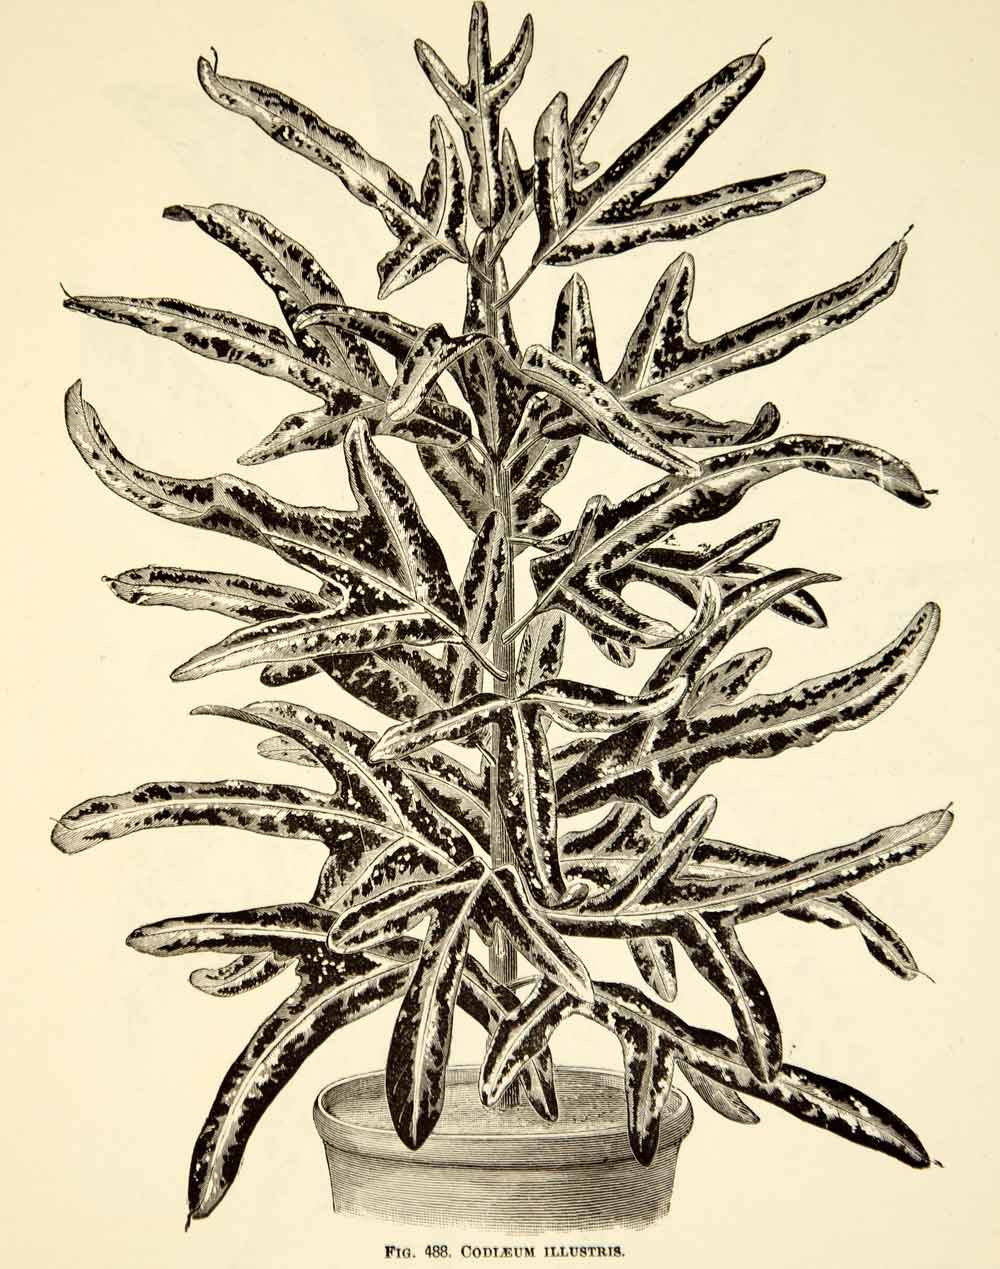 1887 Wood Engraving Art Botanical Codleum Illustris Plant Gardening Nature IDG1